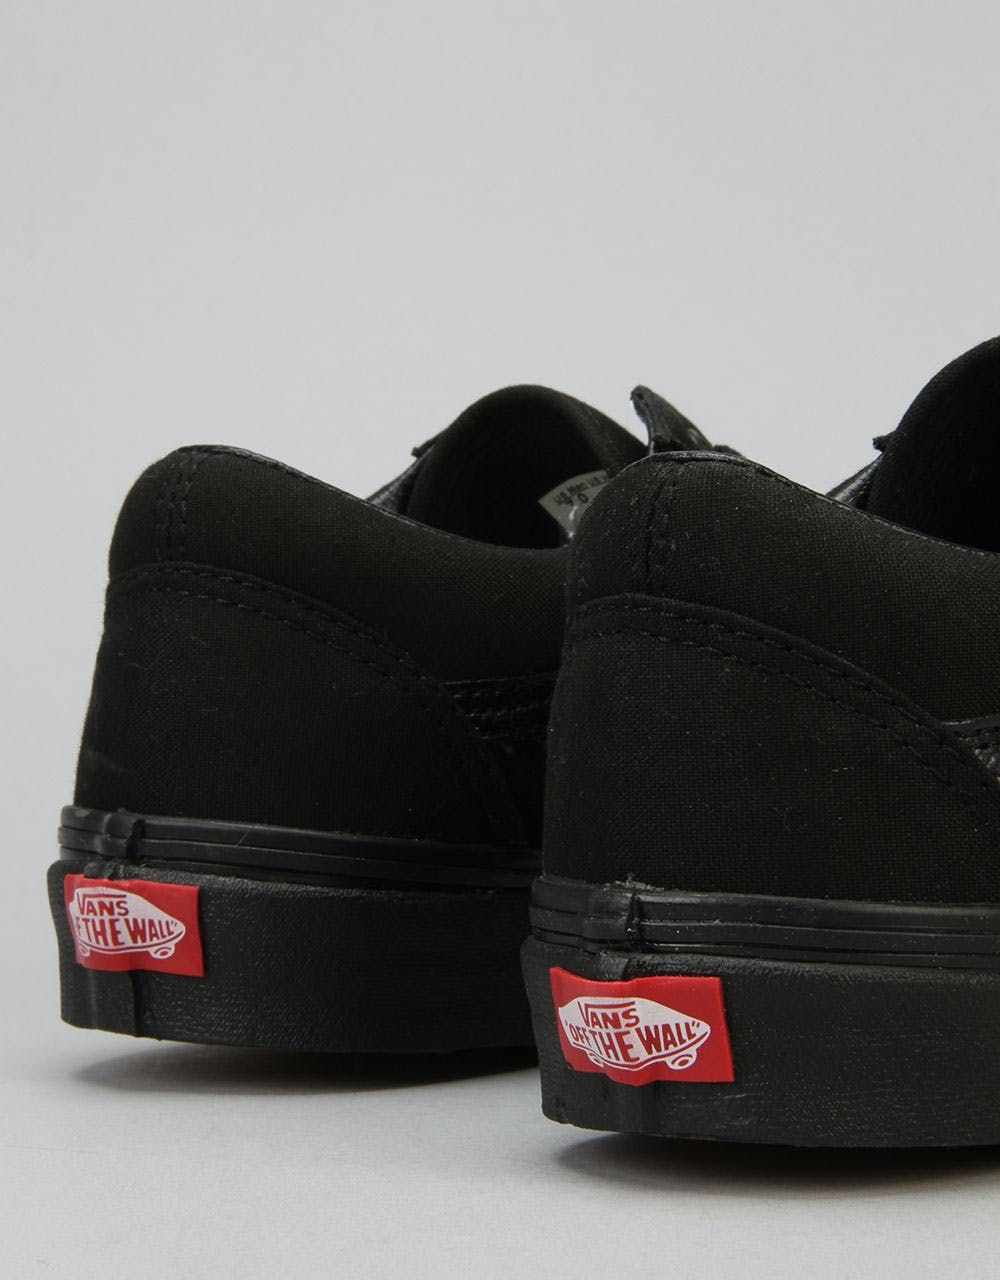 Vans Old Skool Skate Shoes - Black/Black